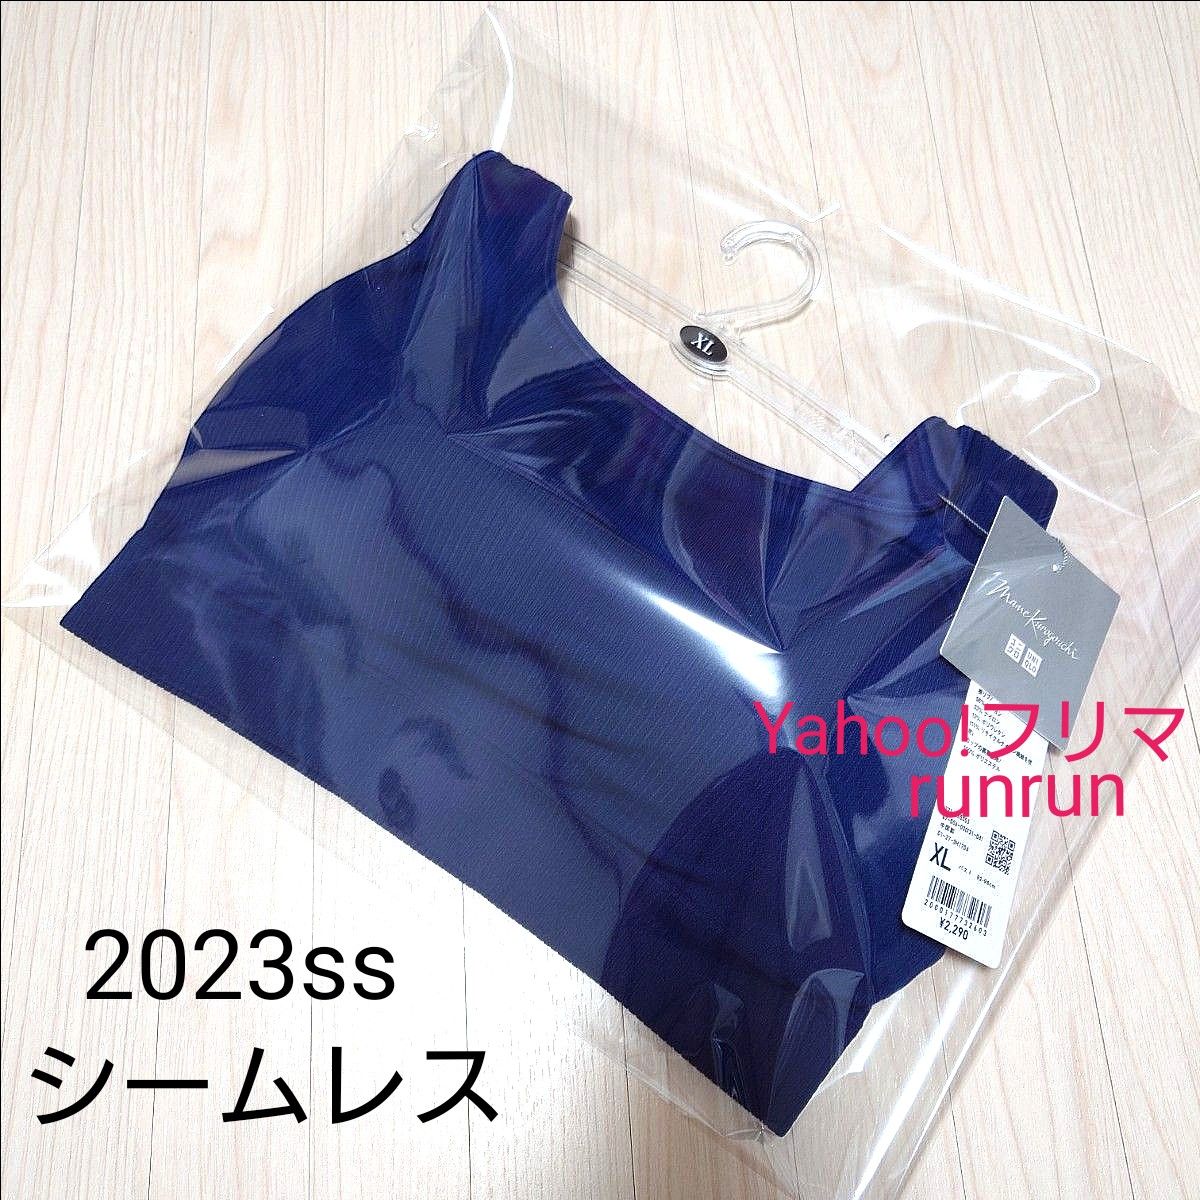 2023モデル ユニクロ マメクロゴウチ ワイヤレスブラ シームレス ブルー  XL  mame kurogouchi  新品